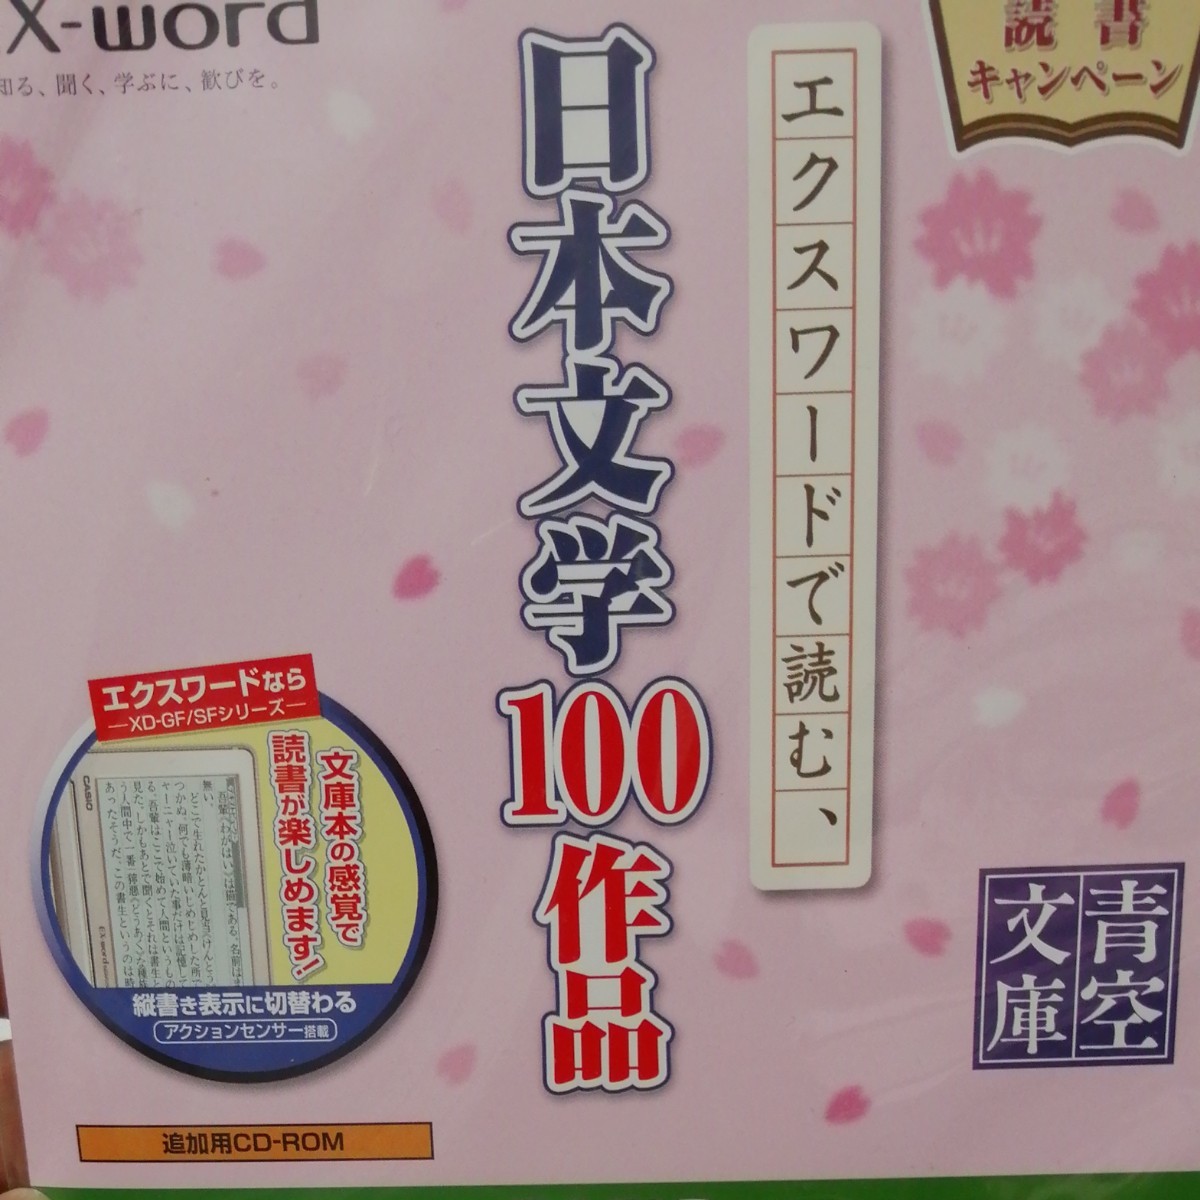 EX-word 日本文学100作品【追加用CD-ROM】